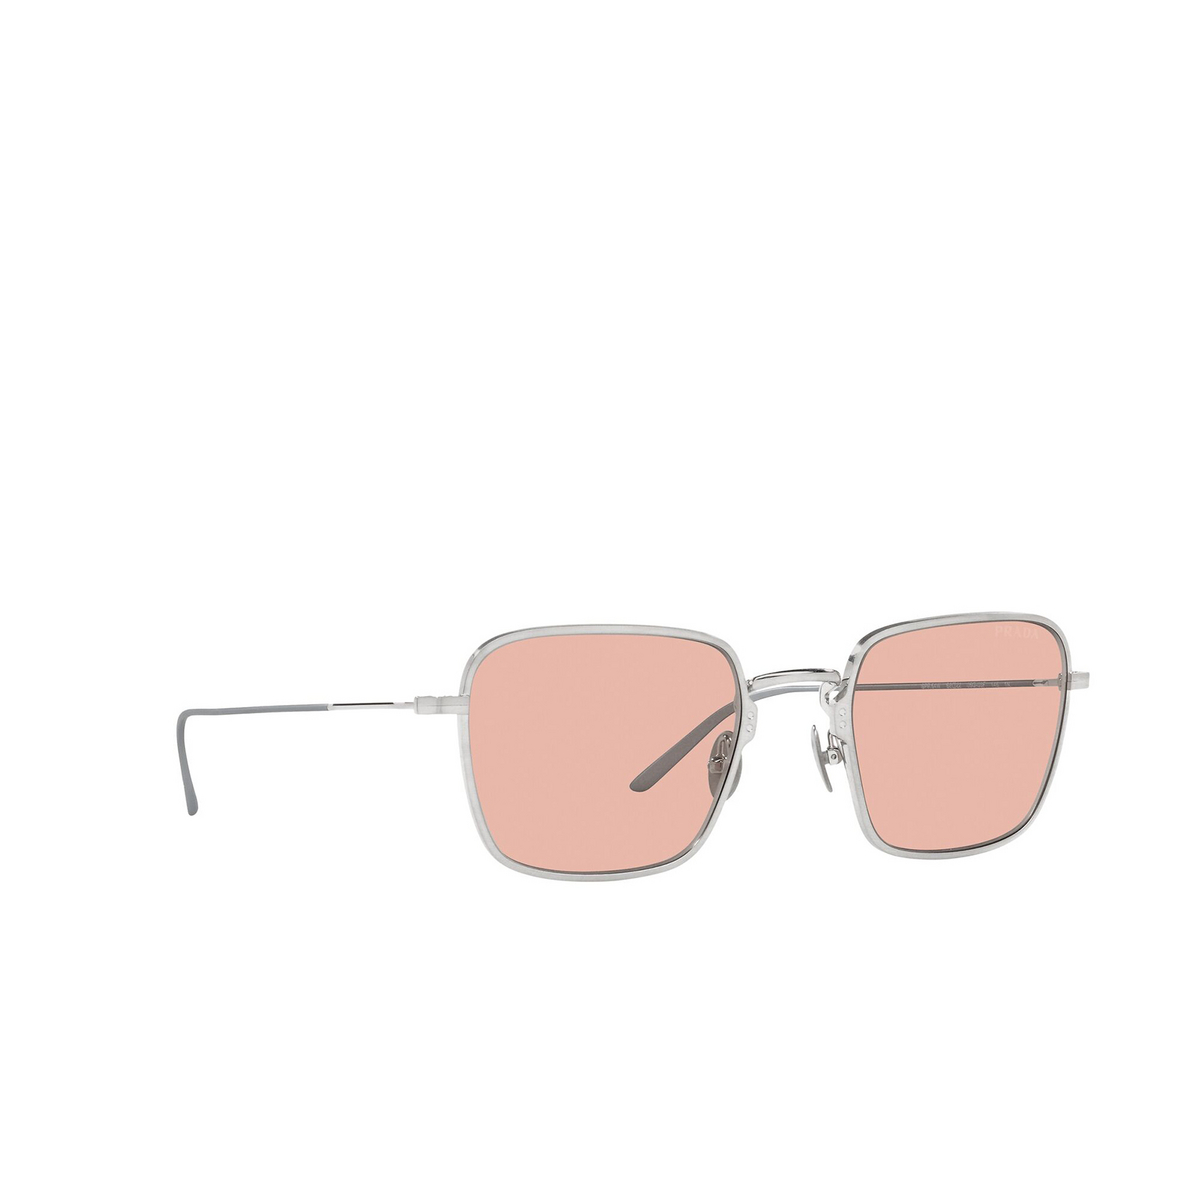 Prada® Square Sunglasses: PR 54WS color Satin Titanium 05Q03F - three-quarters view.